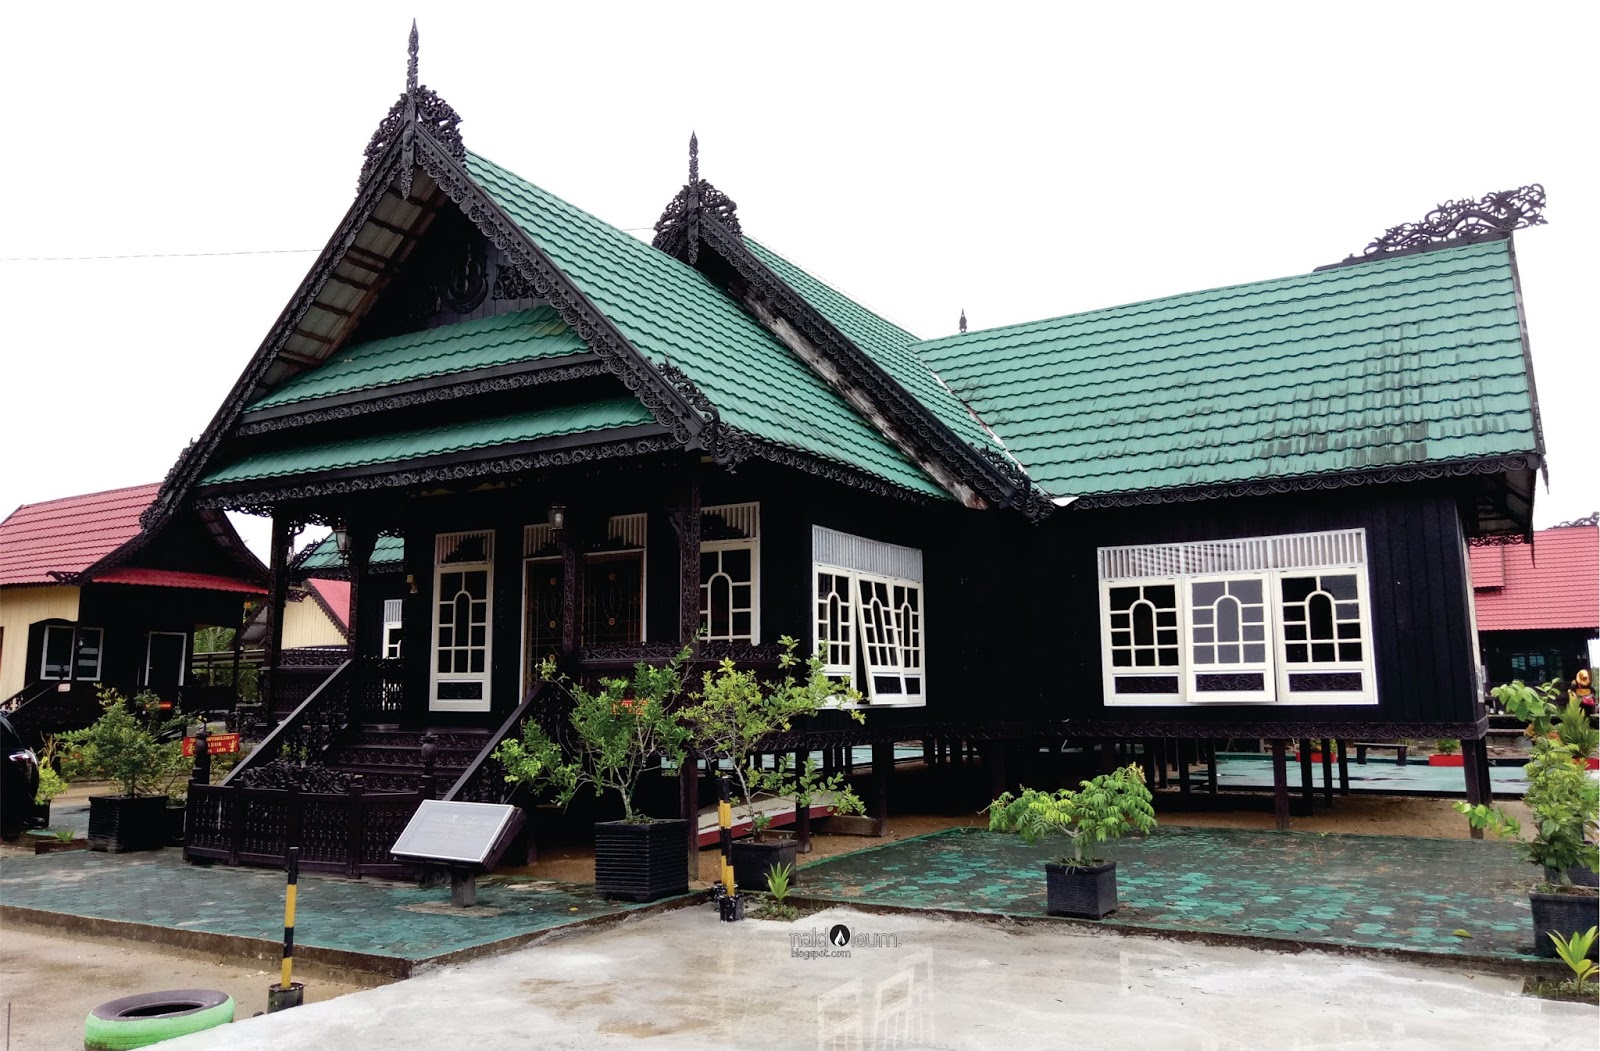 Mengenal Rumah Baloy, Rumah Adat Kalimantan Utara 